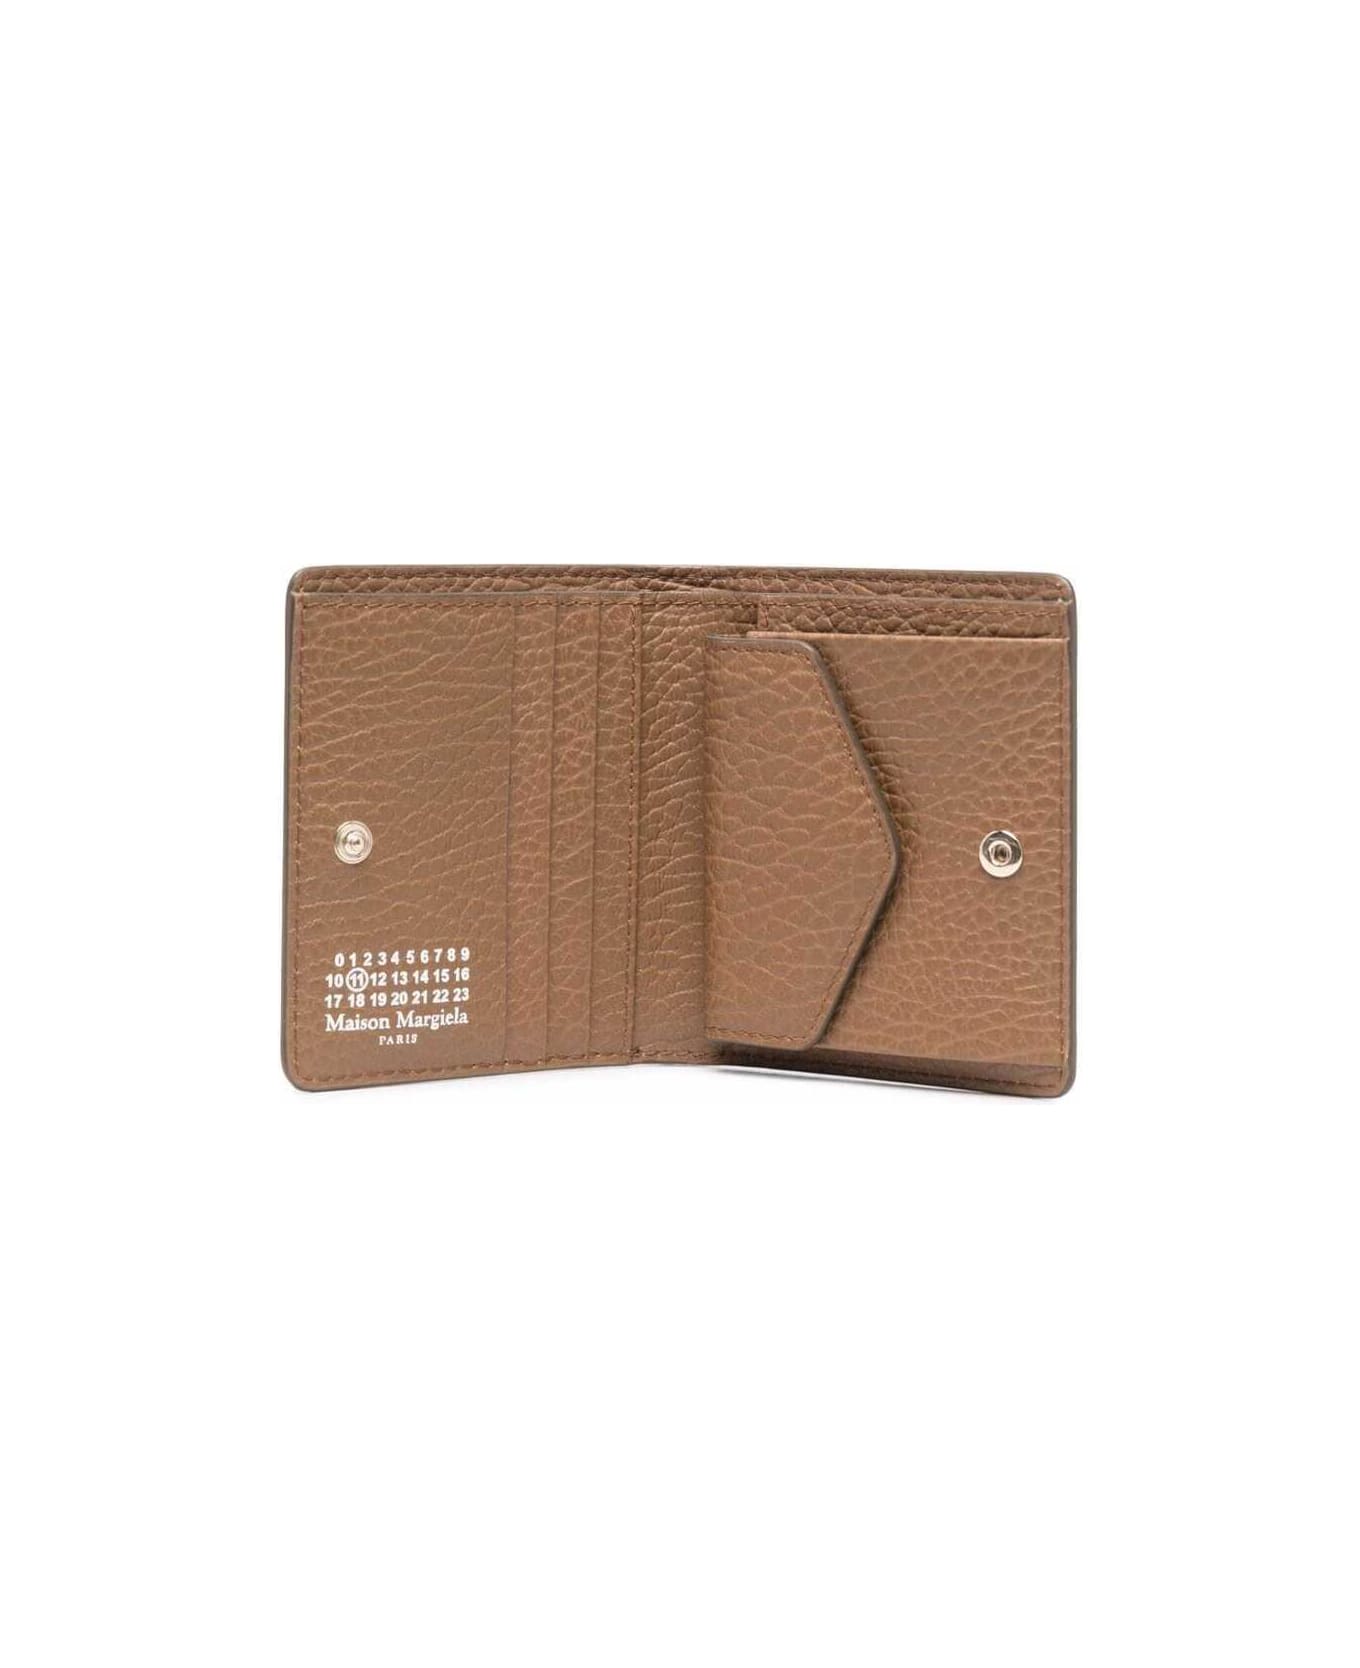 Maison Margiela Beige Bi-fold Wallet In Grainy Leather Woman Maison Margiela - Beige